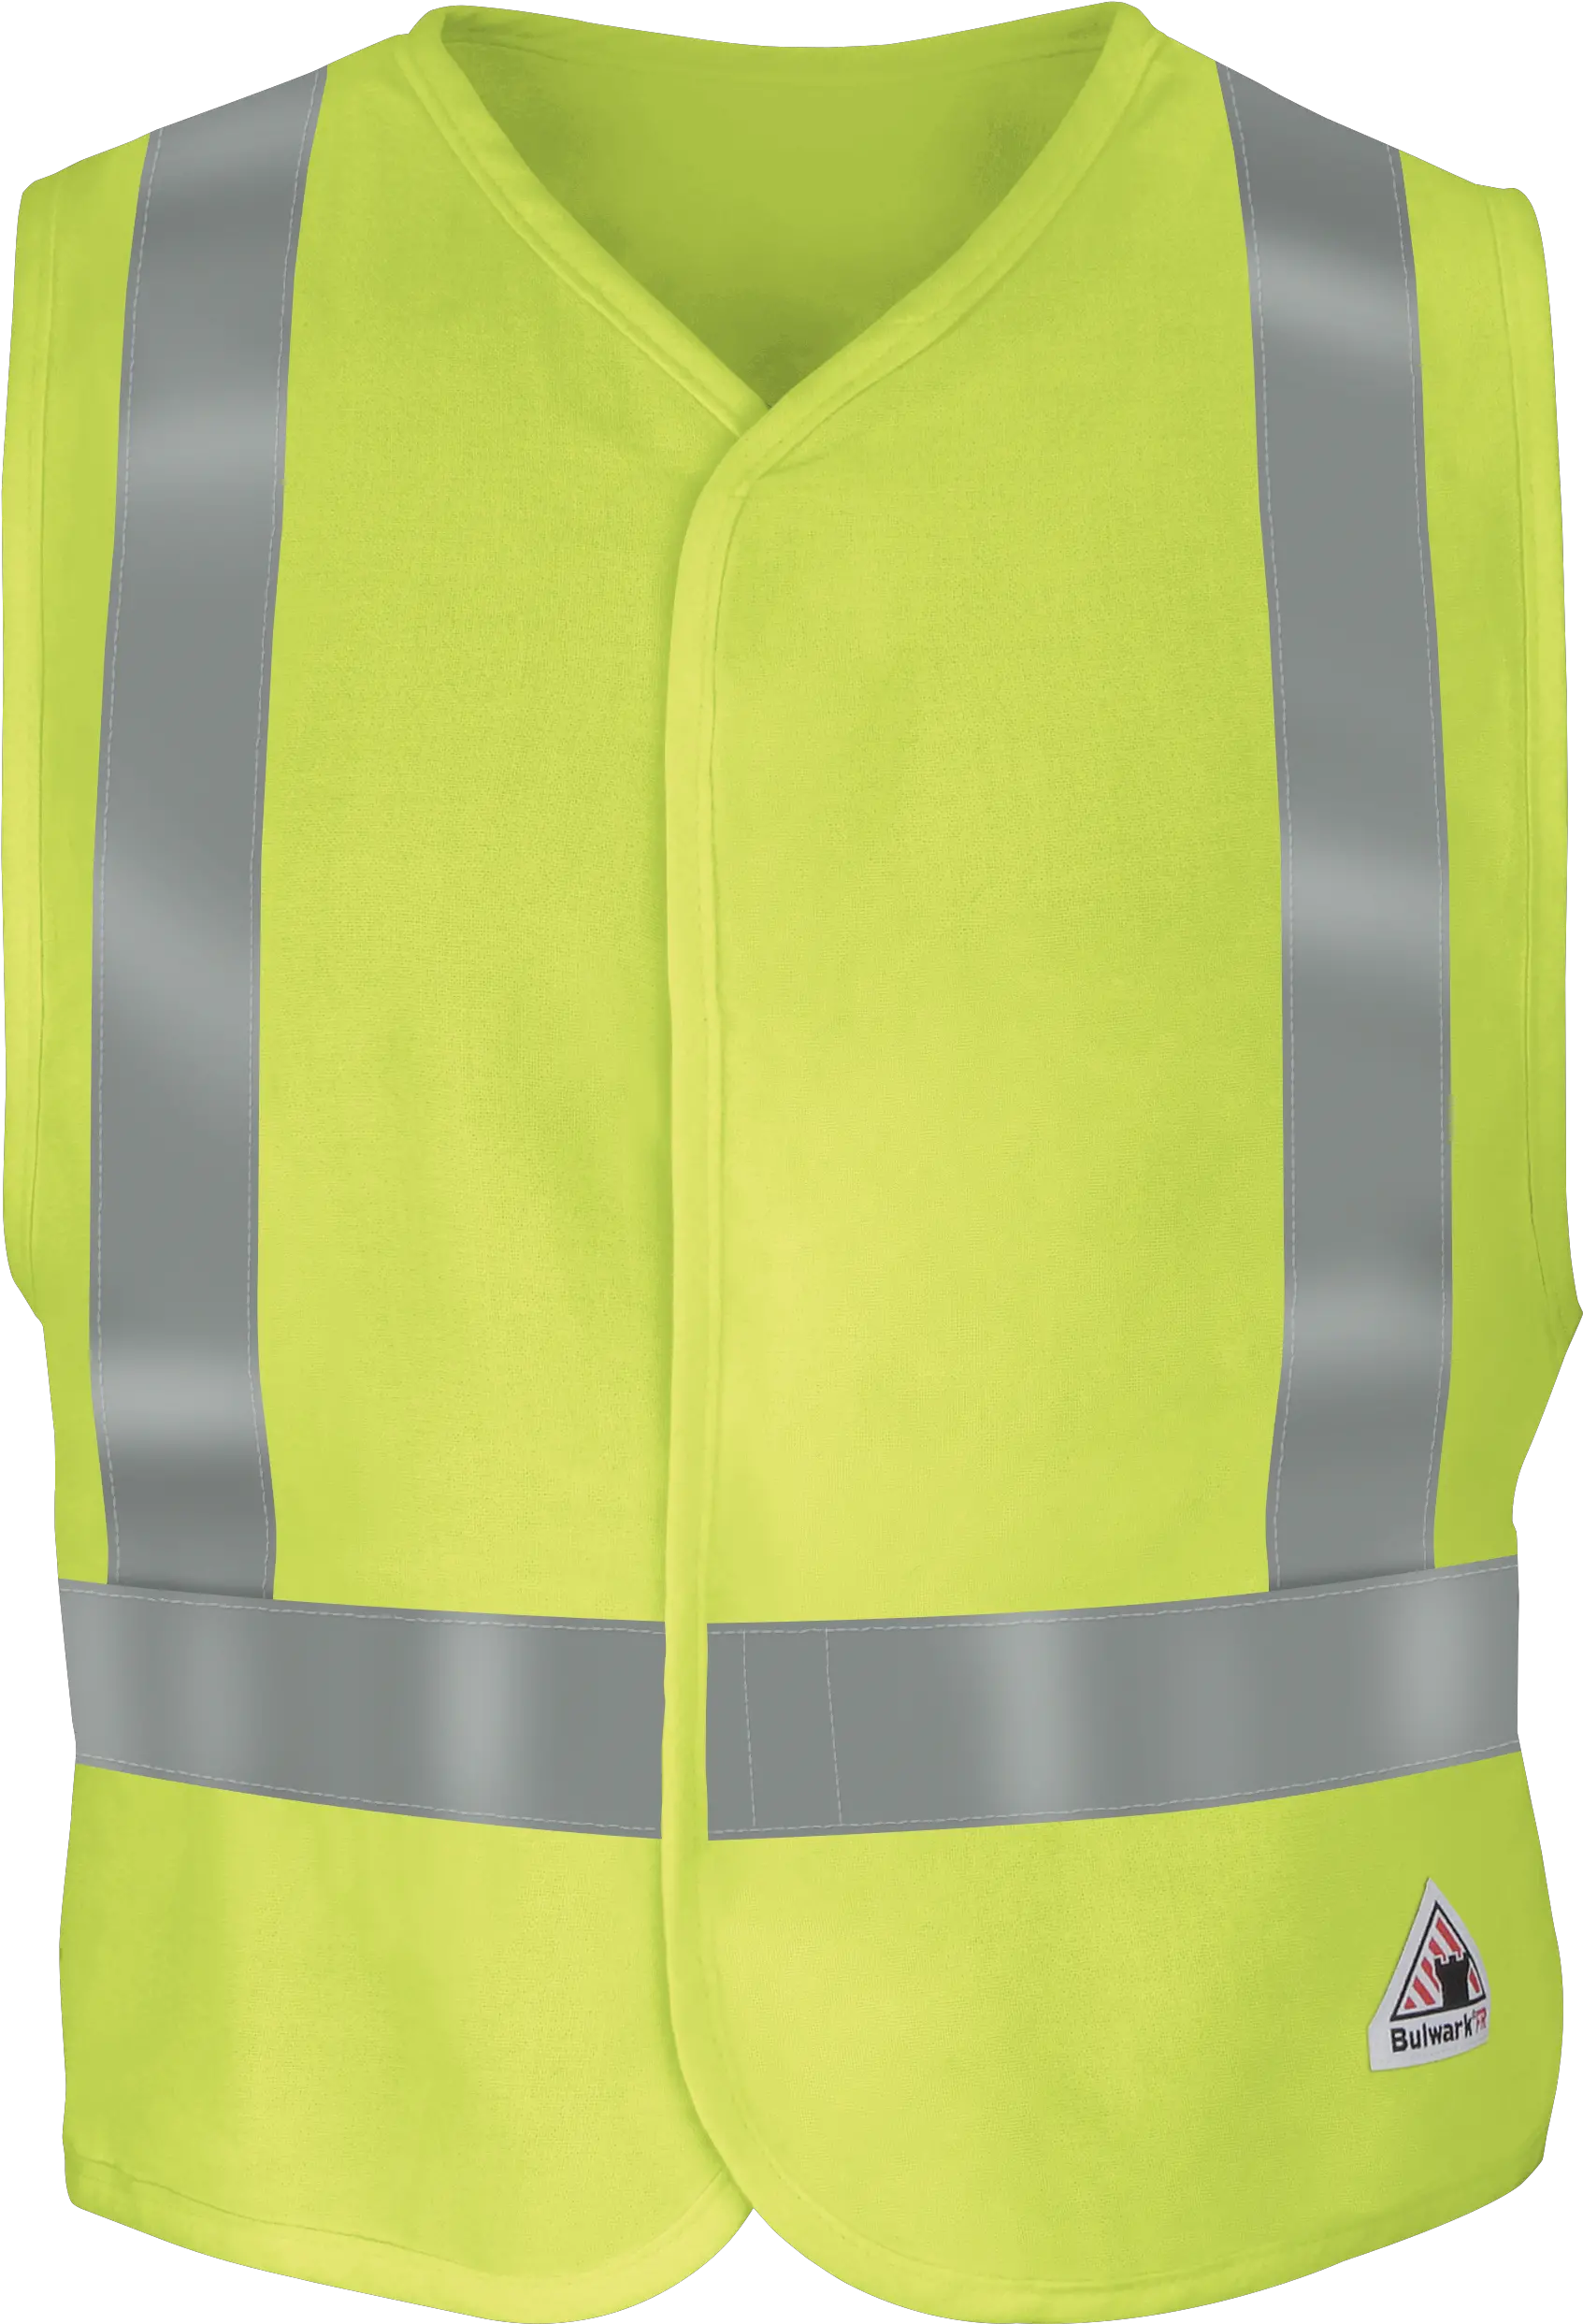 Download Vest Png Transparent Picture Safety Vest Vest Png